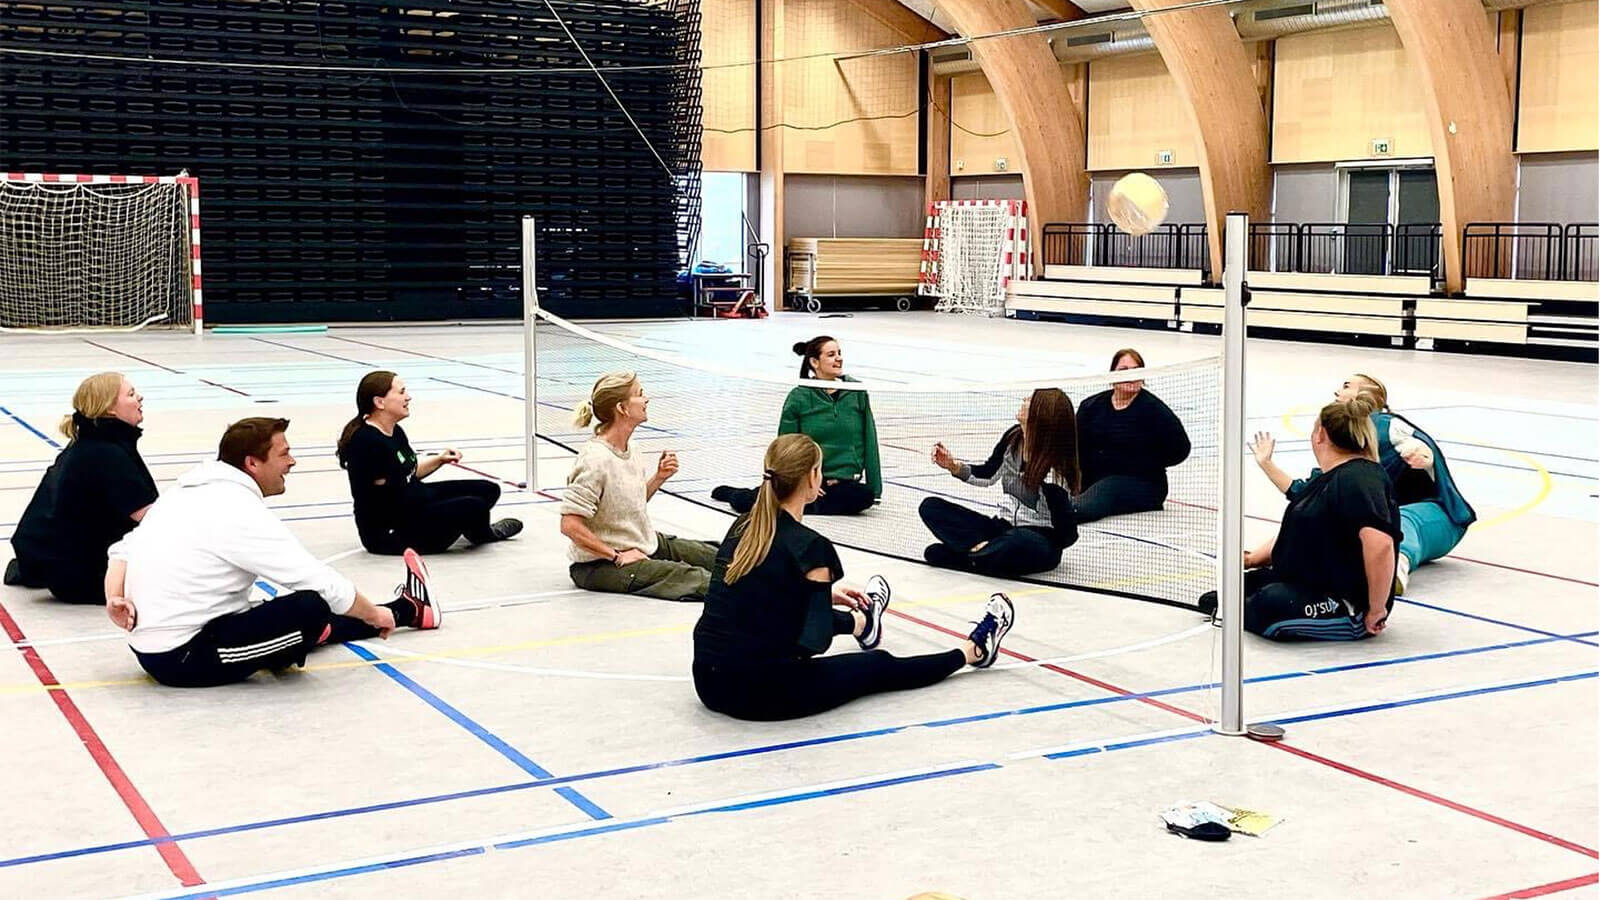 Faroe Adaları’nda CEV Okul Projesi ile Öğrenciler Sporla Buluşuyor